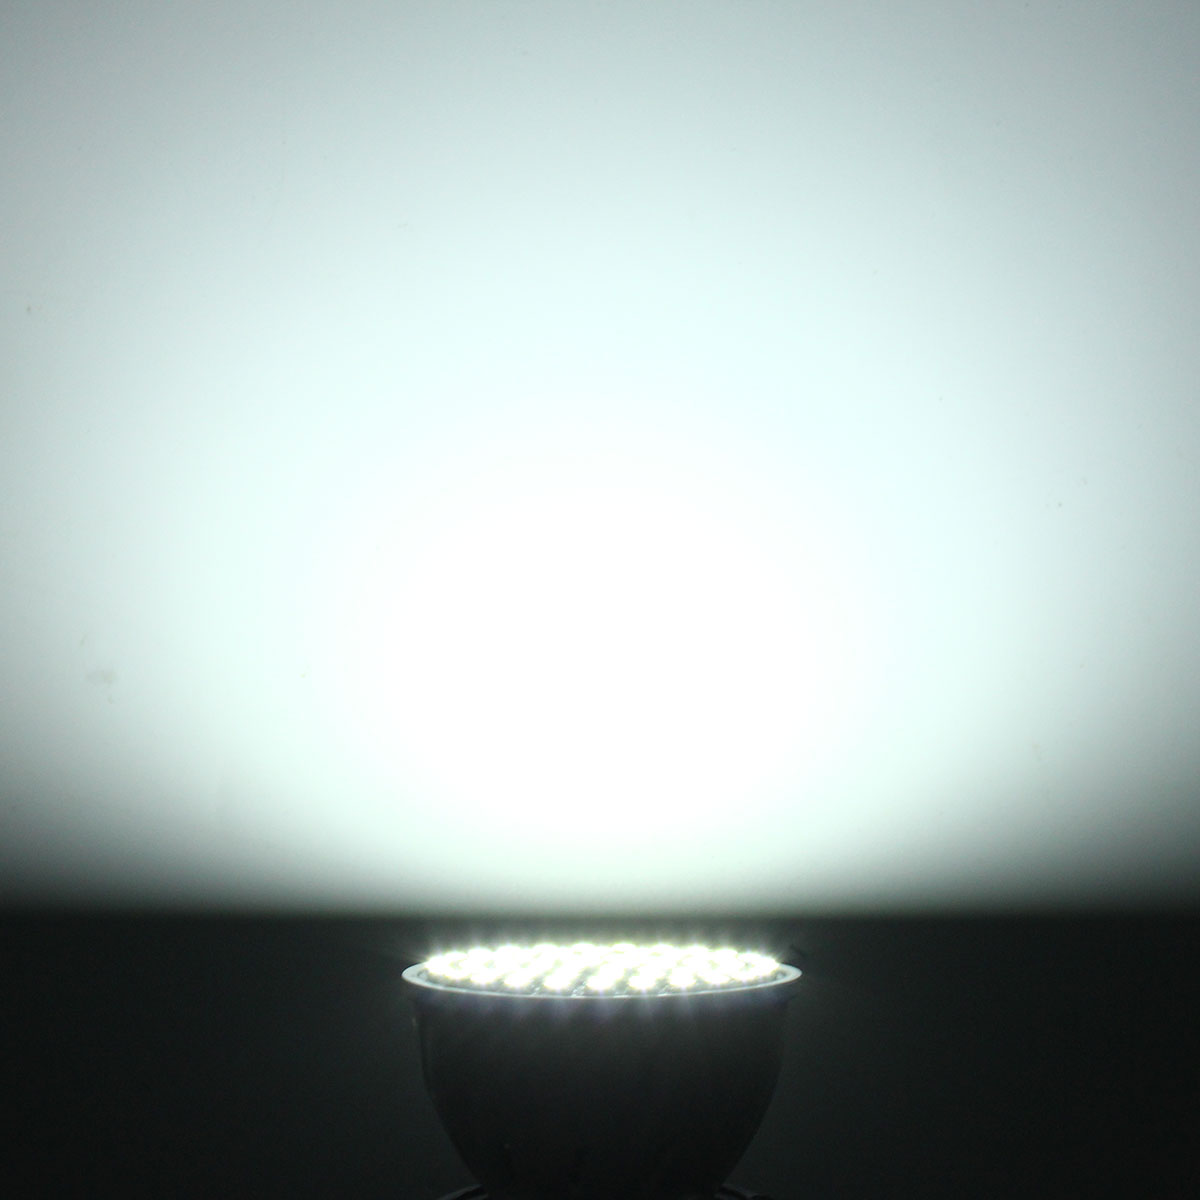 E14-E27-GU10-MR16-35W-72-SMD-3528-Pure-White-Warm-White-LED-Spot-Lightt-Bulbs-Lamps-AC110V-AC220V-1139503-9